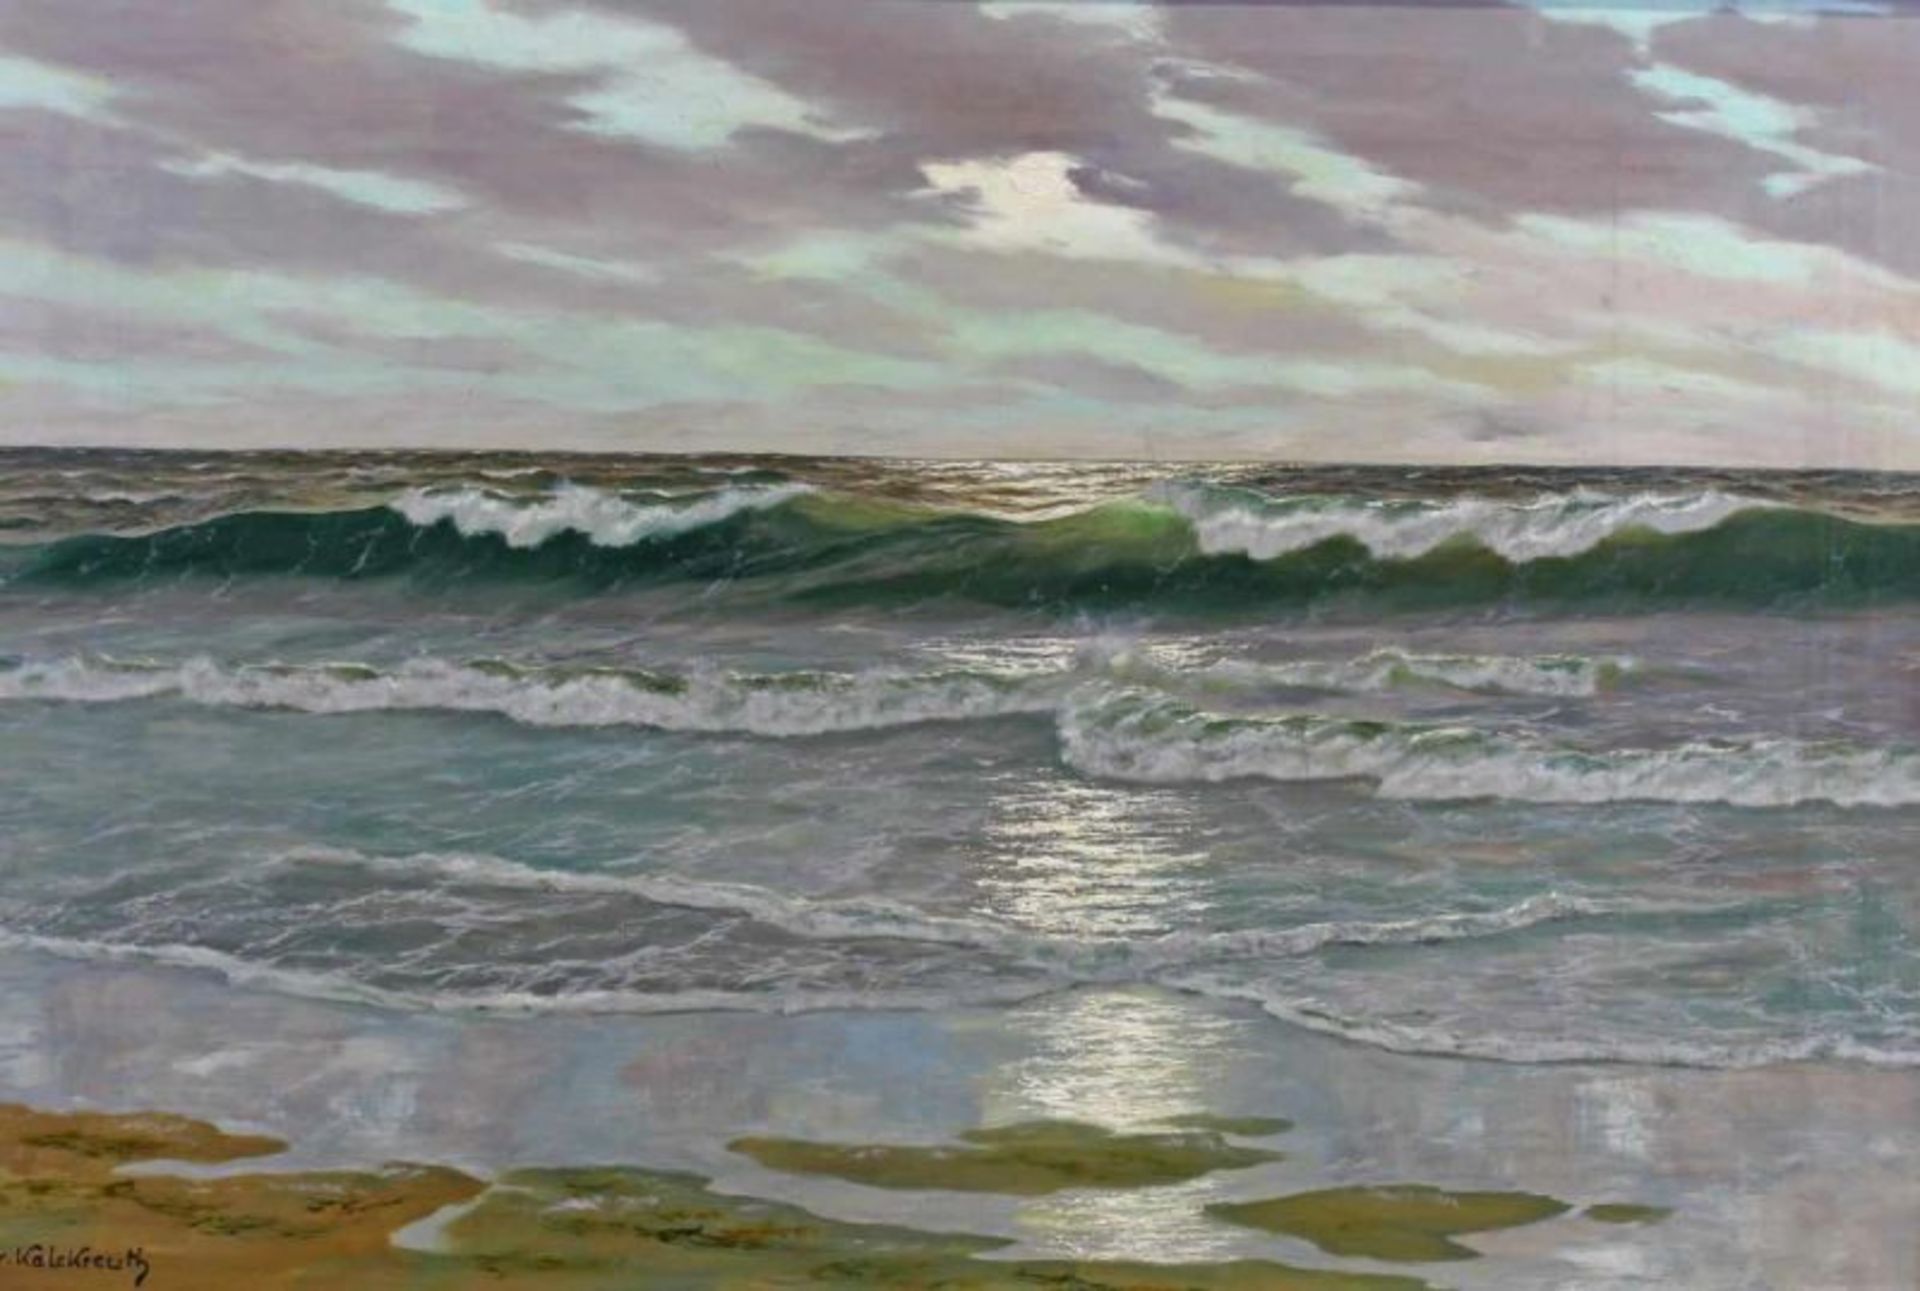 Kalckreuth, Patrick von (1892 Starnberg - 1970 Düsseldorf, Landschafts- und Marinemaler), "